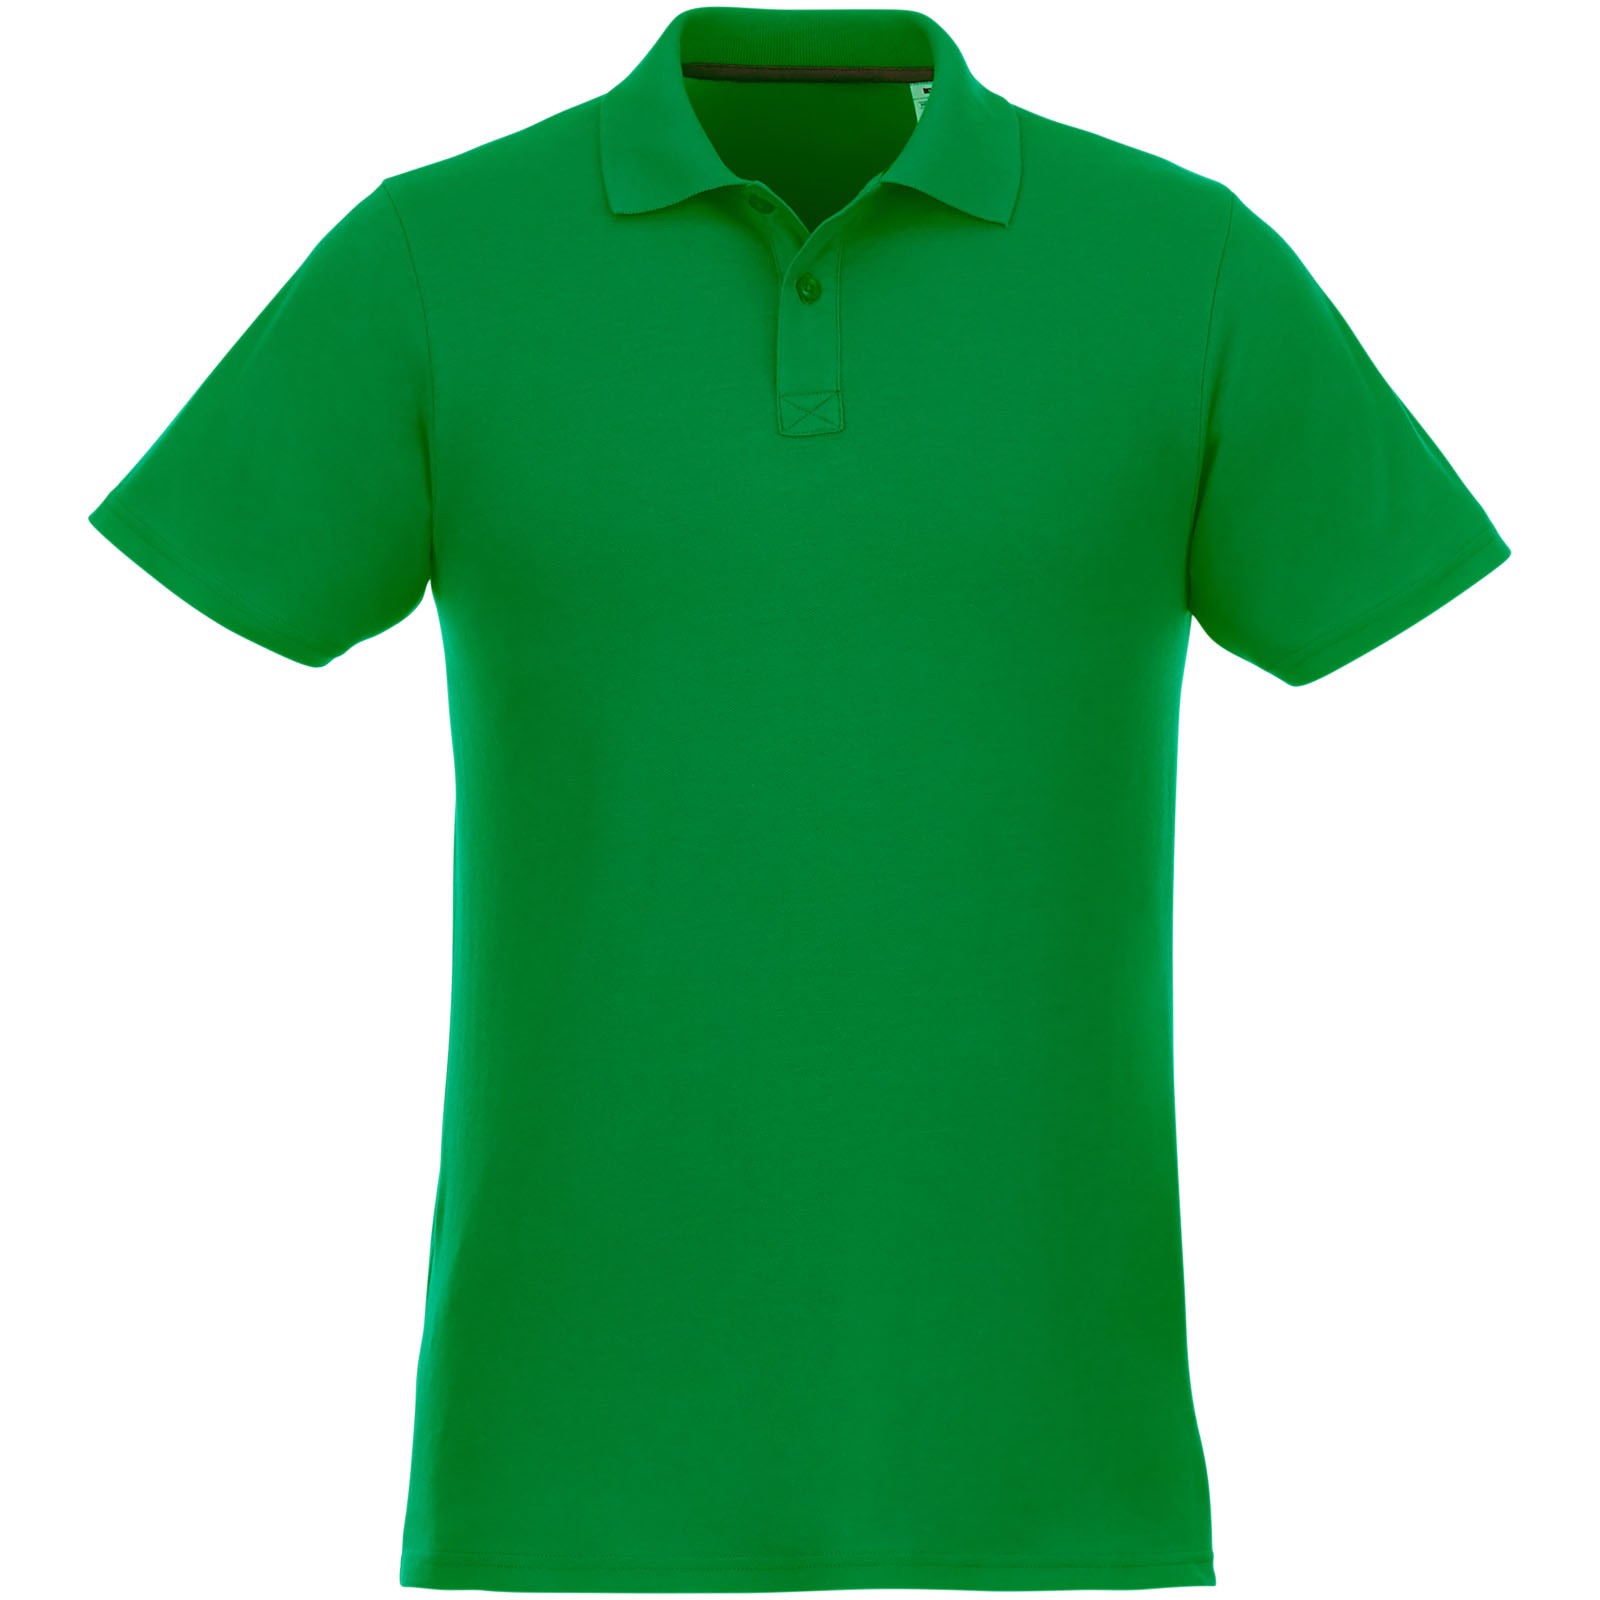 Helios - koszulka męska polo z krótkim rękawem - Zielona paproć / M